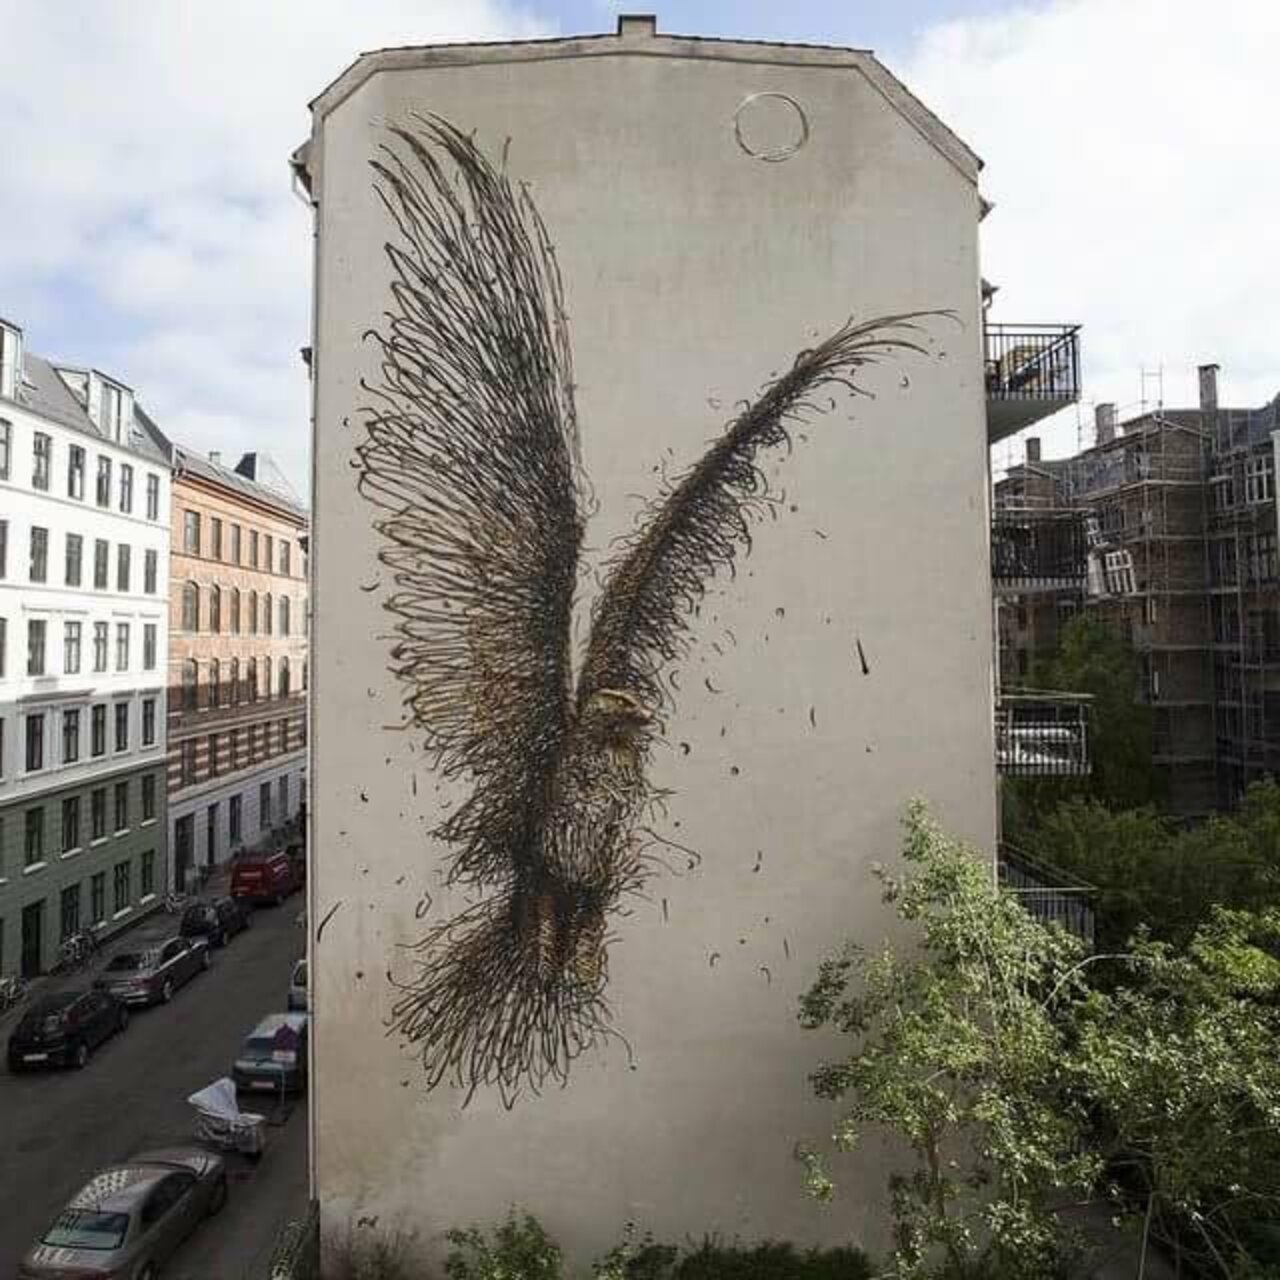 #mural by DAleast in #Copenhagen #Denmark #streetart #art #graffiti https://t.co/gfw9WR3aTz